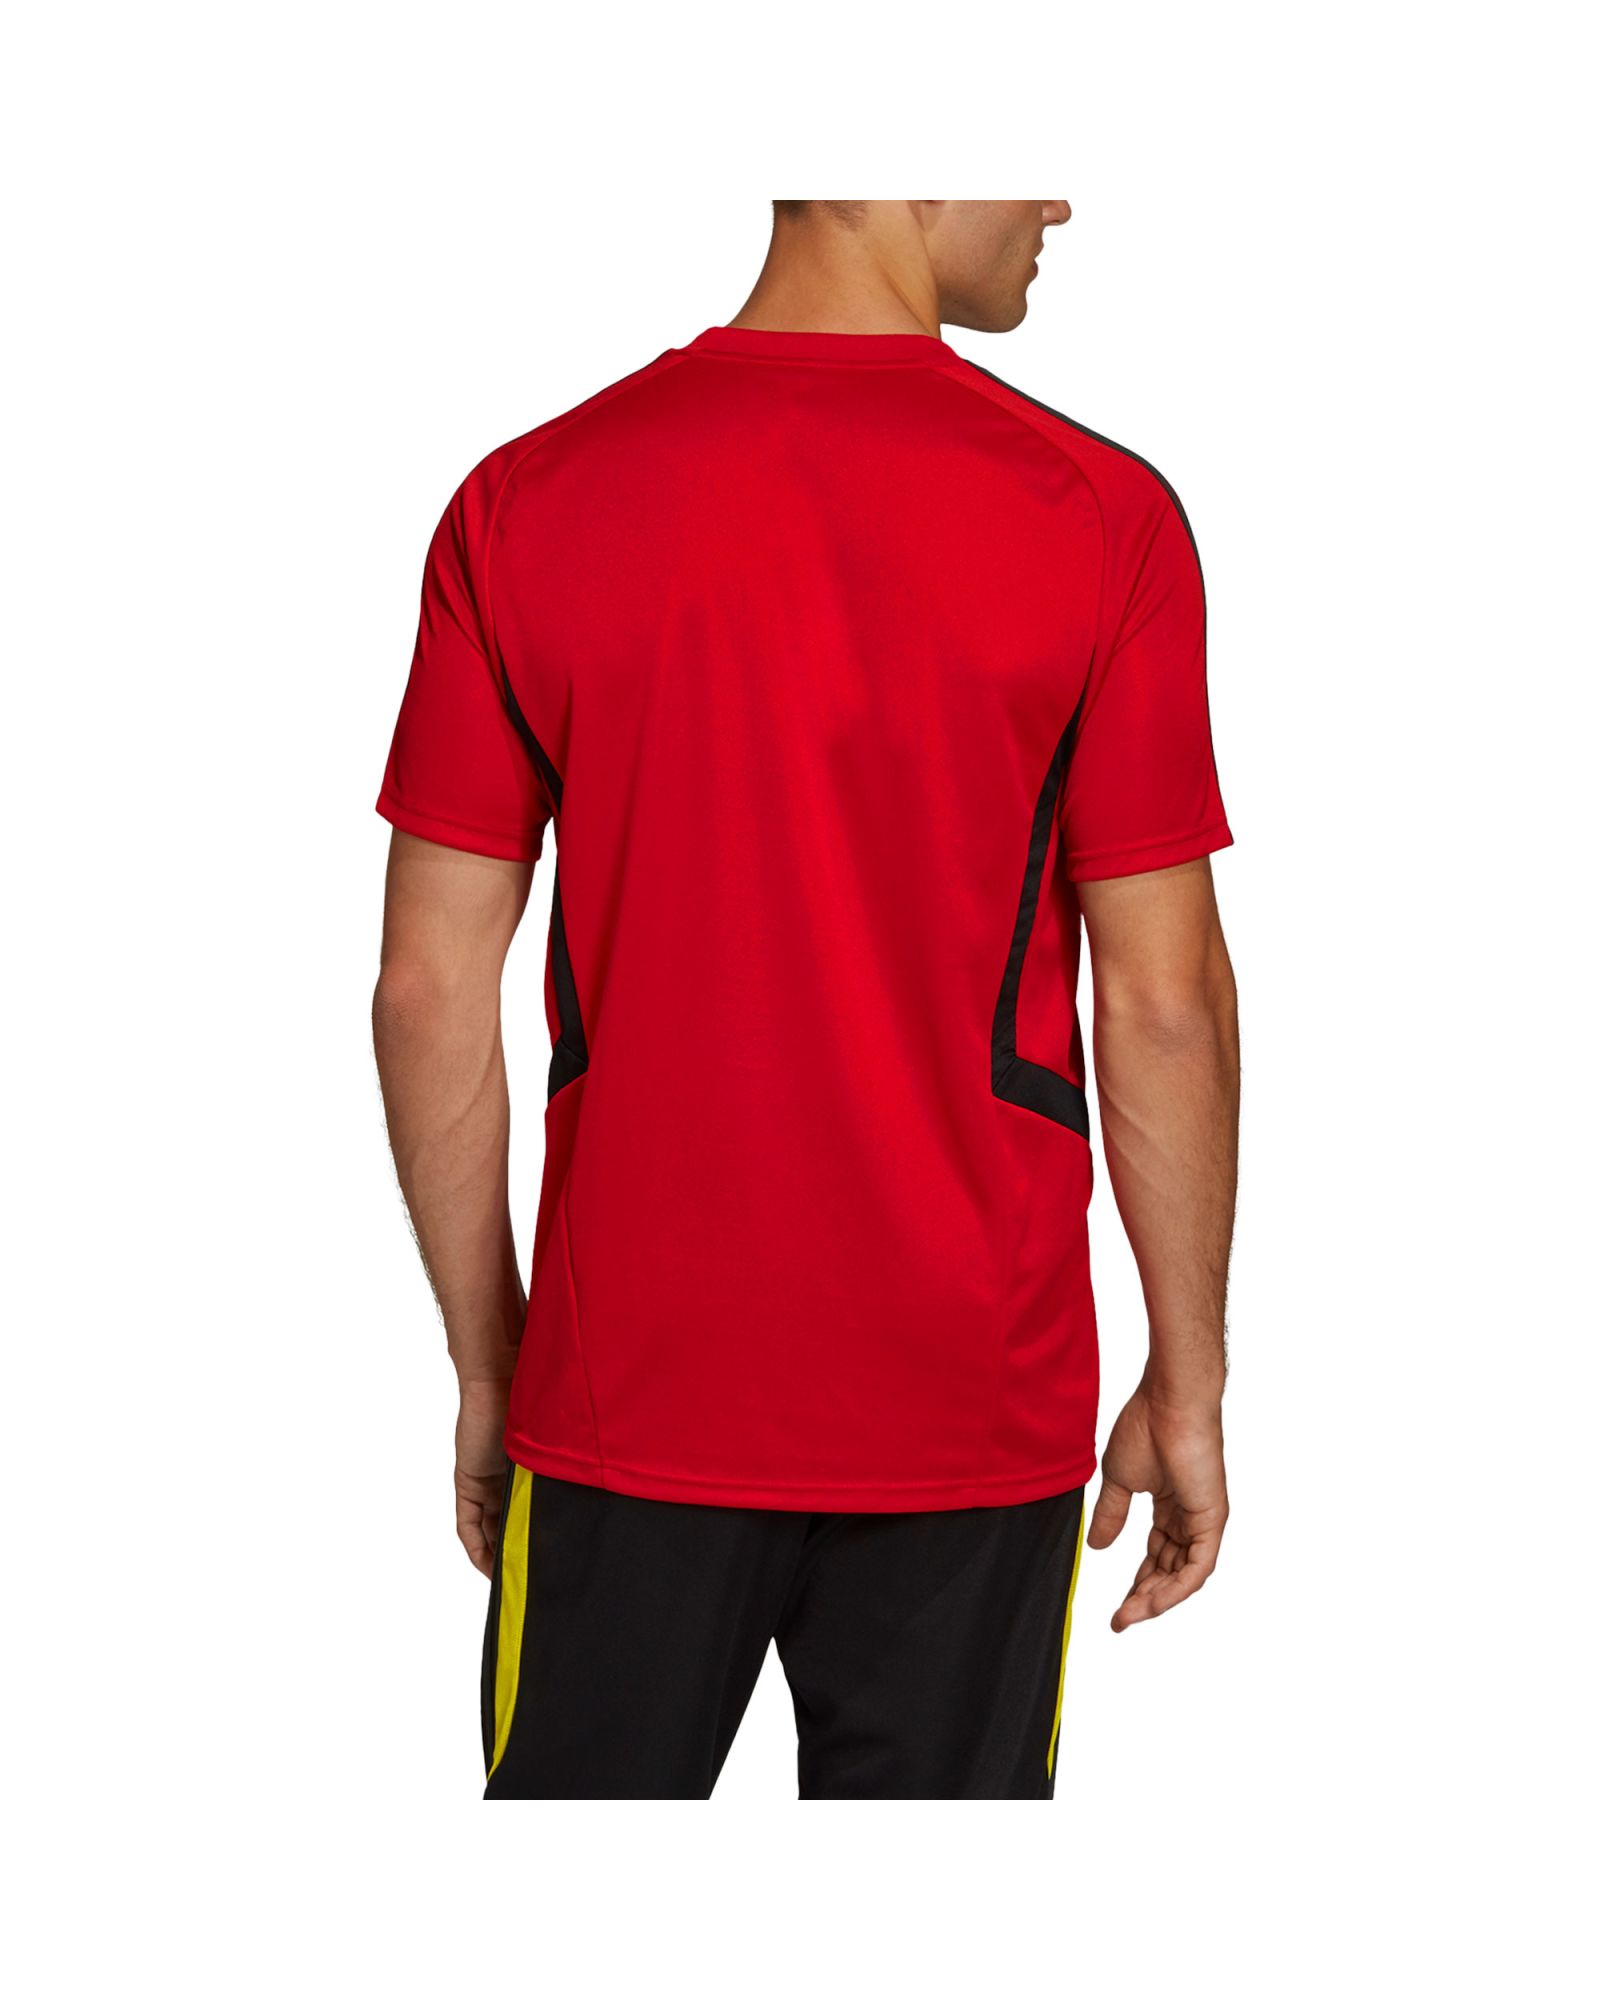 Camiseta de Training del Manchester United 2019/2020 Rojo - Fútbol Factory